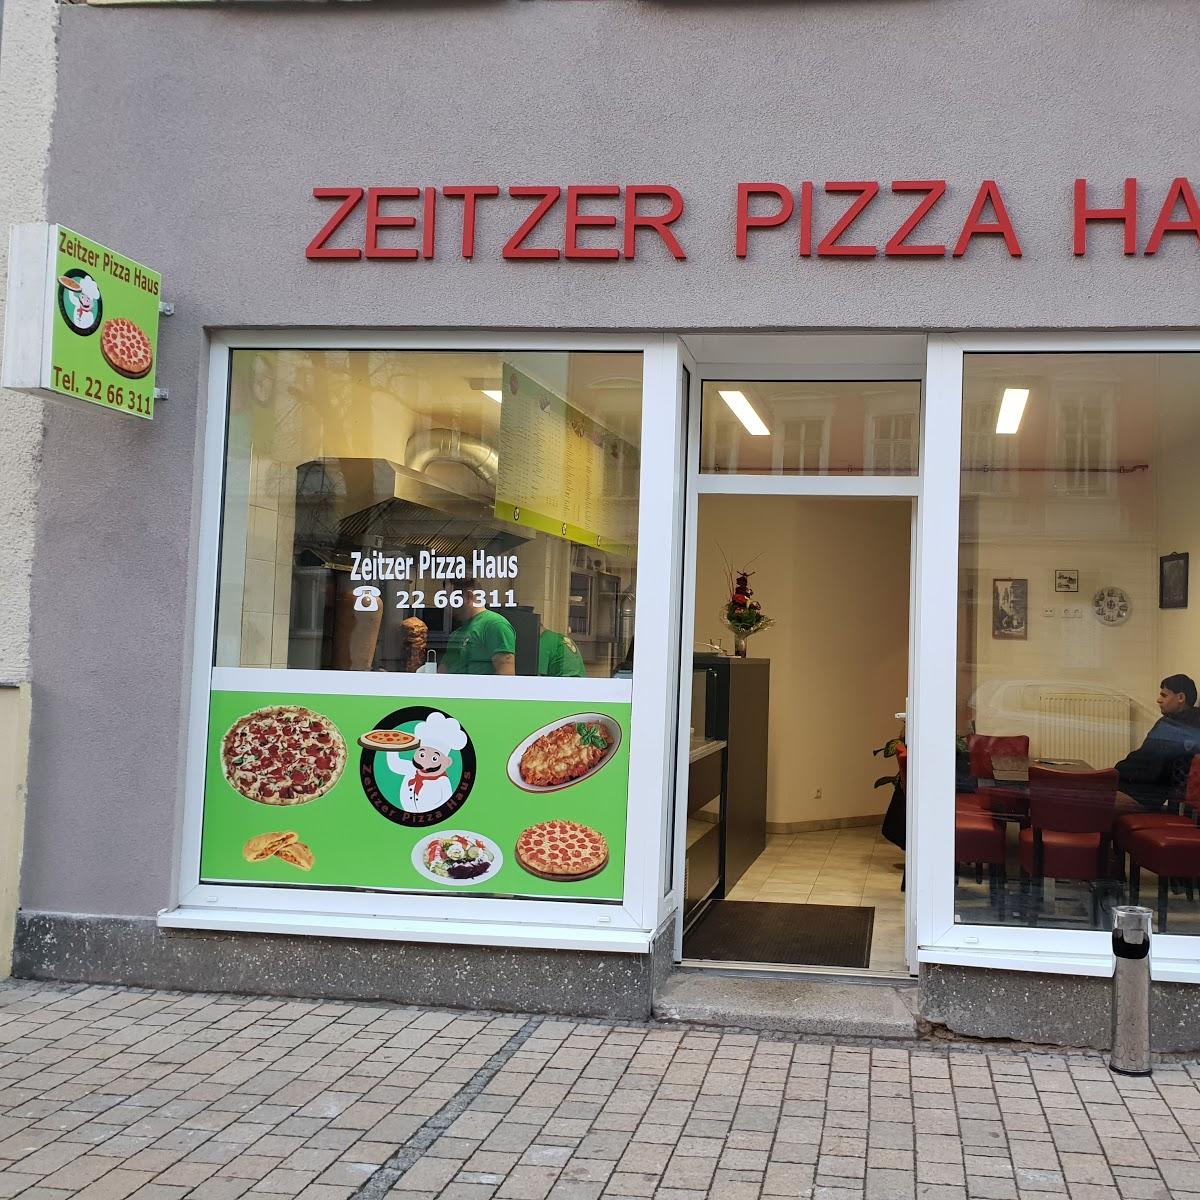 Restaurant "er Pizza Haus" in Zeitz